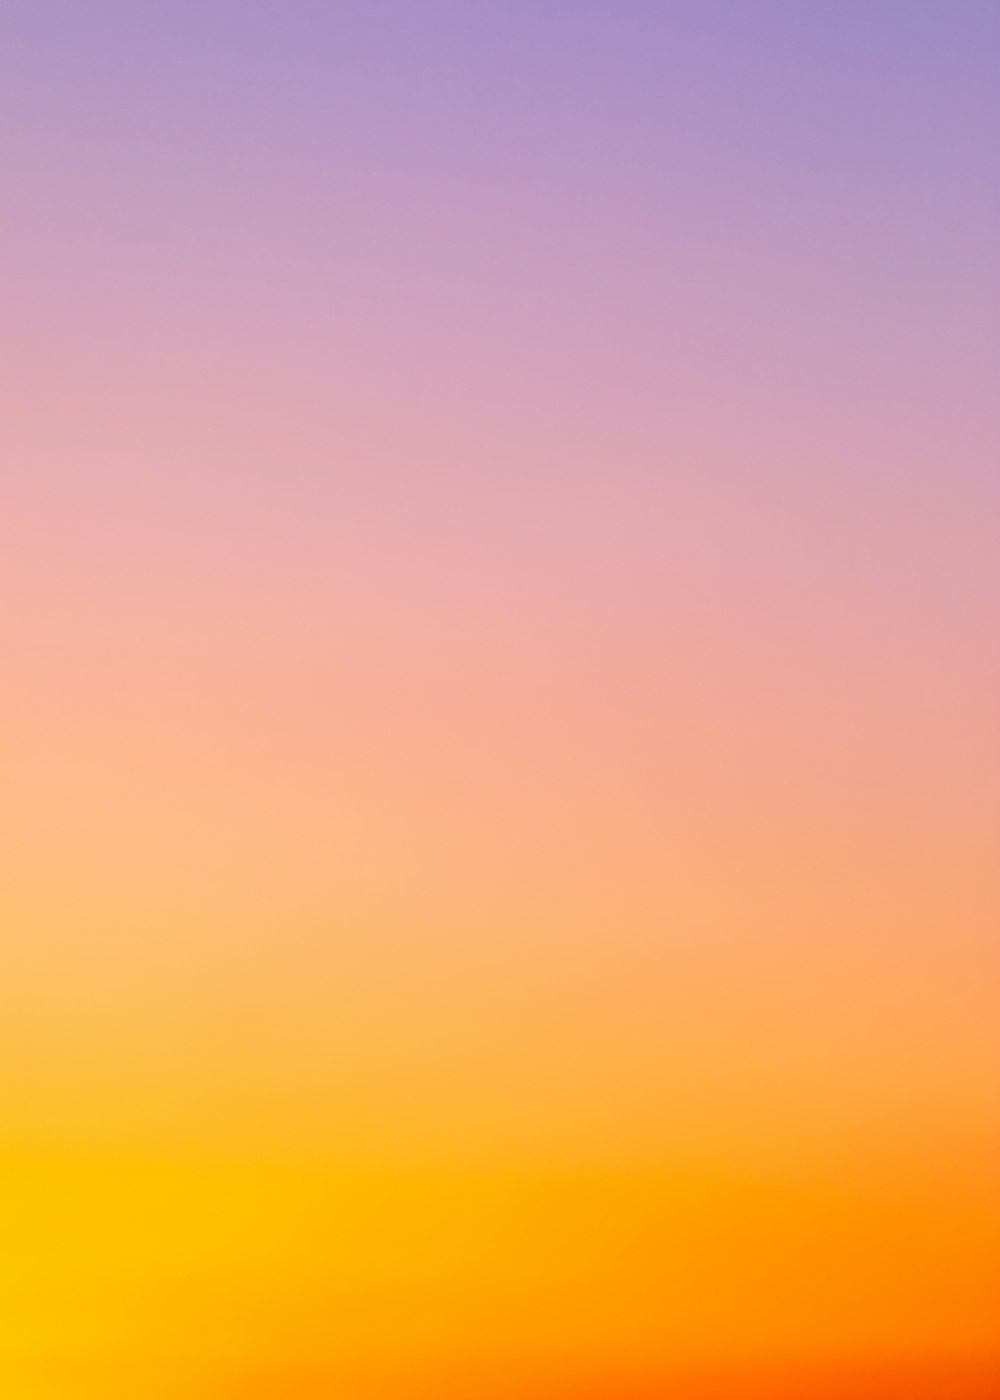 Với những bức ảnh chuyển tiếp của hoàng hôn, tạo ra những sắc màu thay đổi trên bầu trời, bạn sẽ thực sự bị cuốn hút bởi sự phong phú và đa dạng của gradient. Hãy nhấn vào ảnh này để khám phá thêm sự thanh lịch và độc đáo của những bức ảnh gradient này.